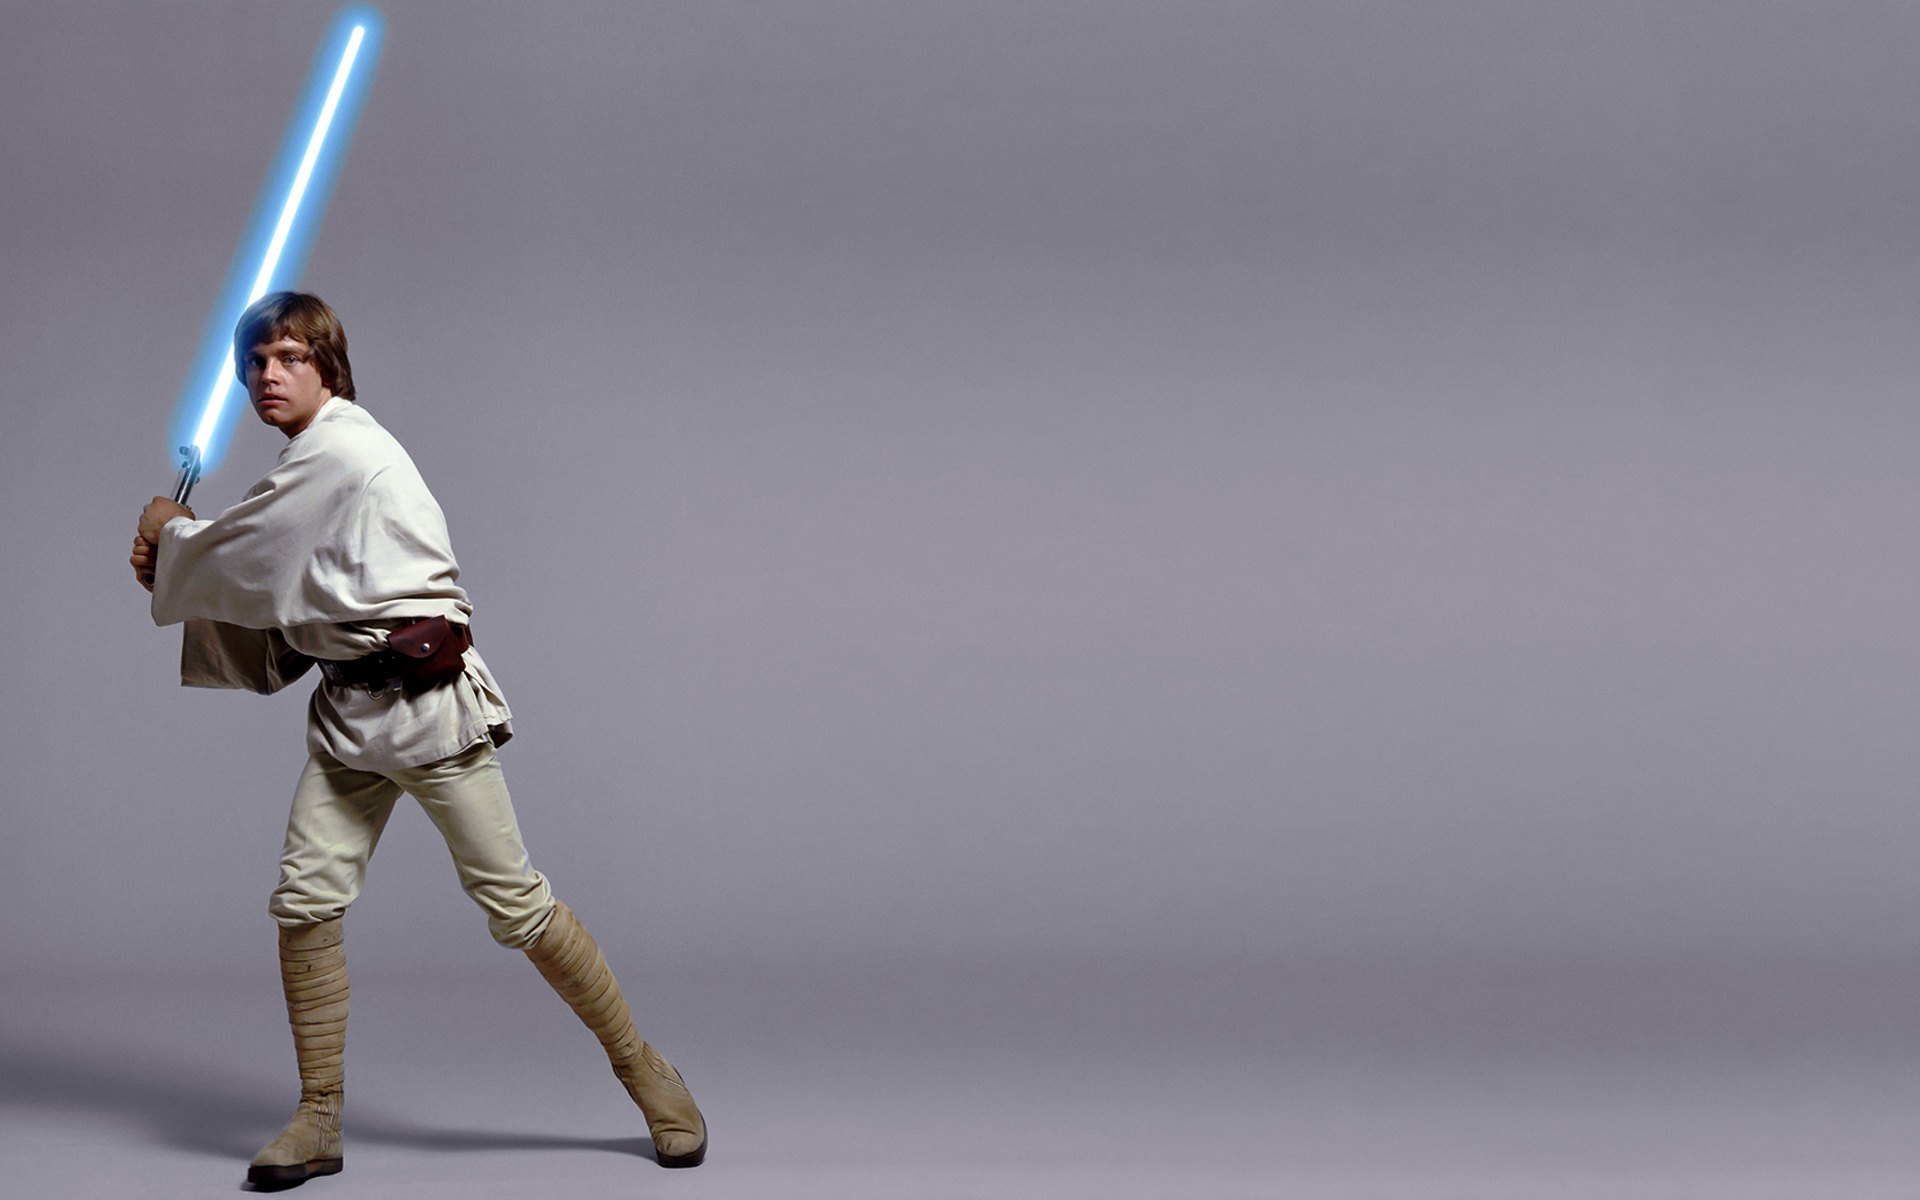 Luke Skywalker (Star Wars), Luke Skywalker wallpaper, HD background image, 1920x1200 HD Desktop